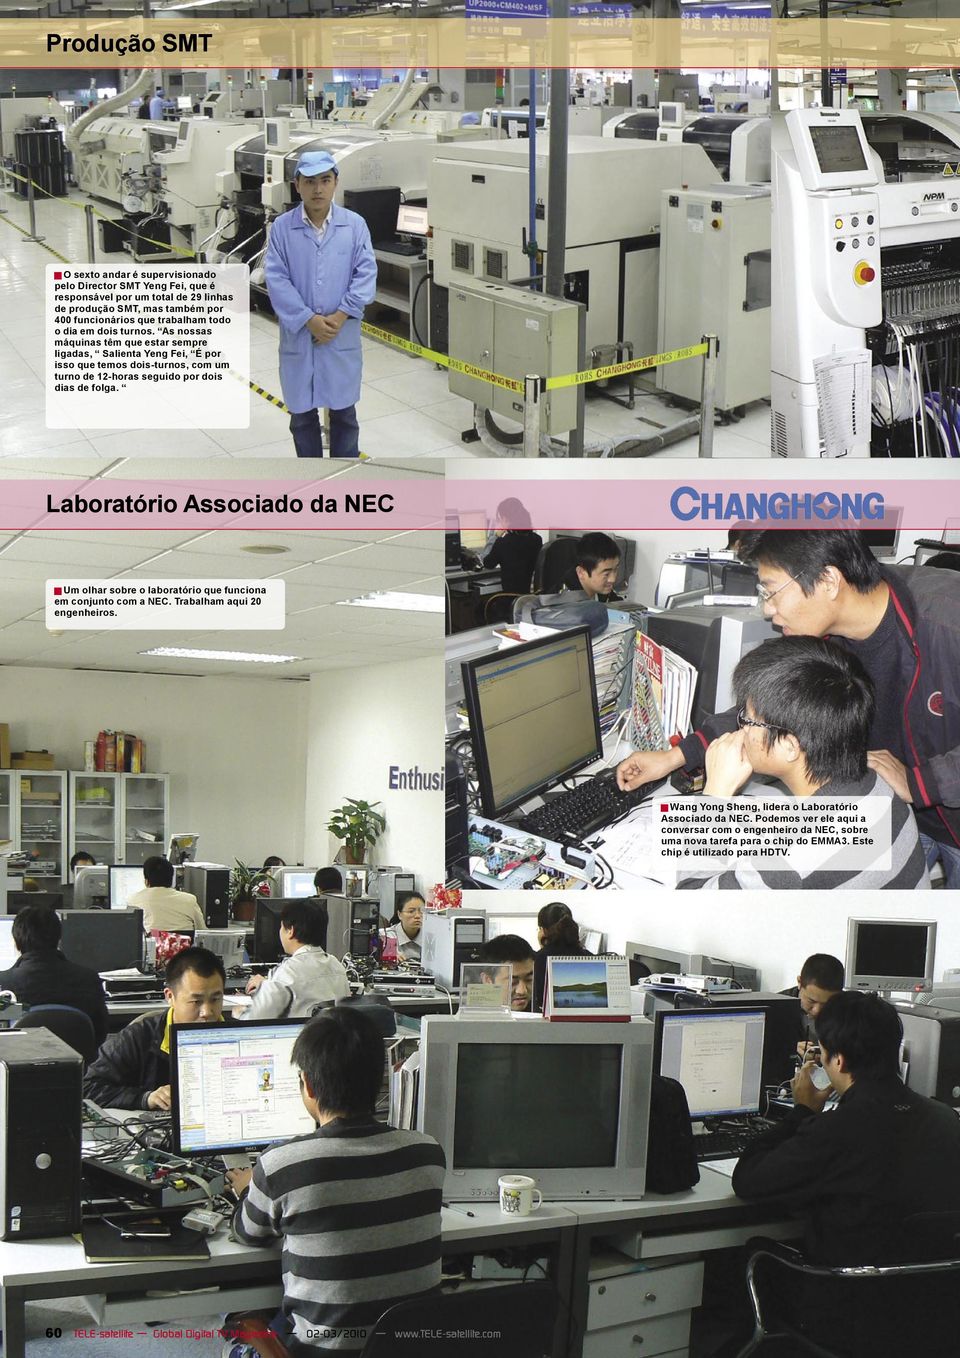 Laboratório Associado da NEC Um olhar sobre o laboratório que funciona em conjunto com a NEC. Trabalham aqui 20 engenheiros. Wang Yong Sheng, lidera o Laboratório Associado da NEC.